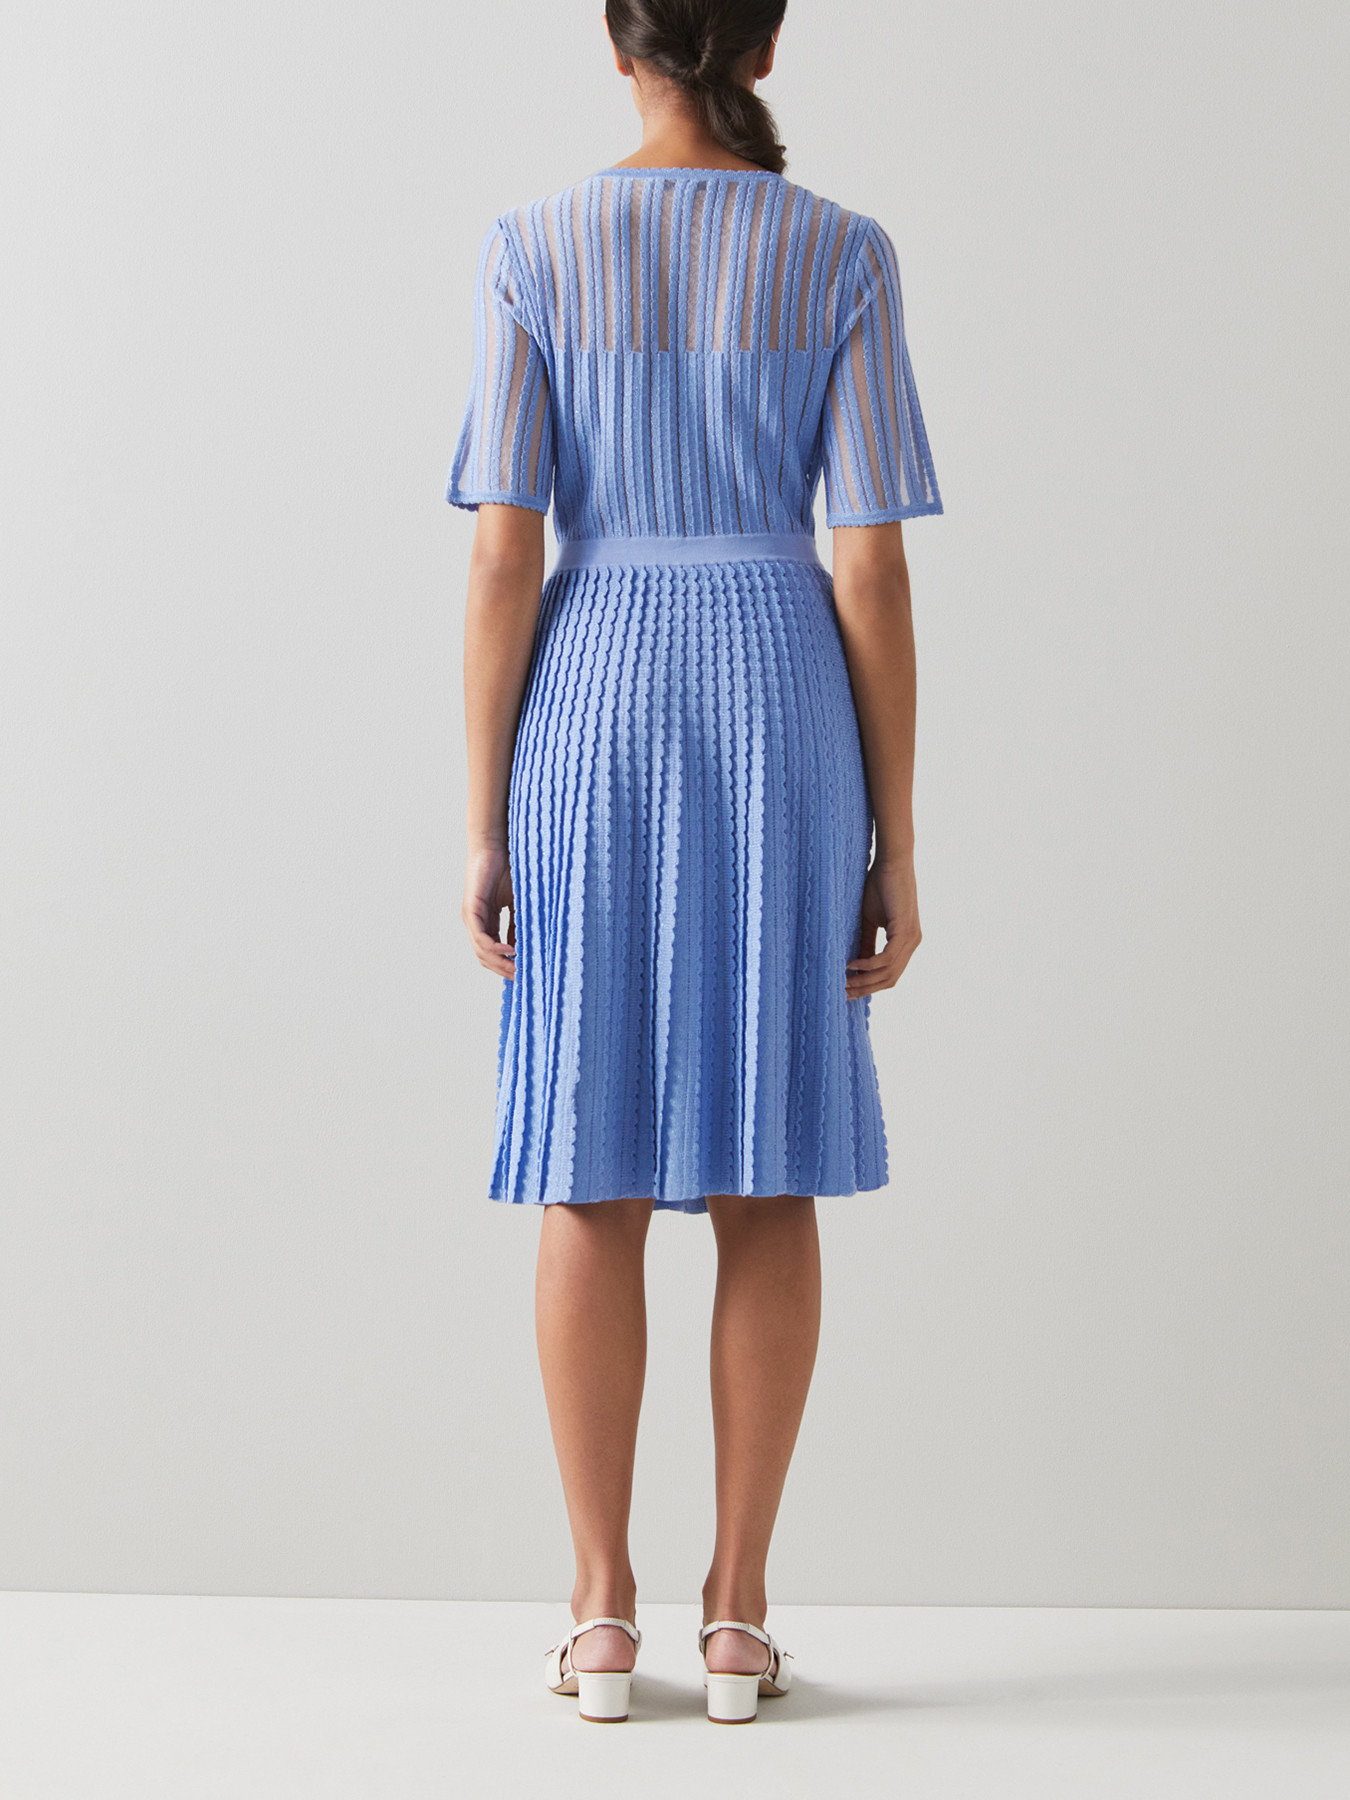 Women's LK Bennett Anna Blue Lurex Knitted Dress | Fenwick